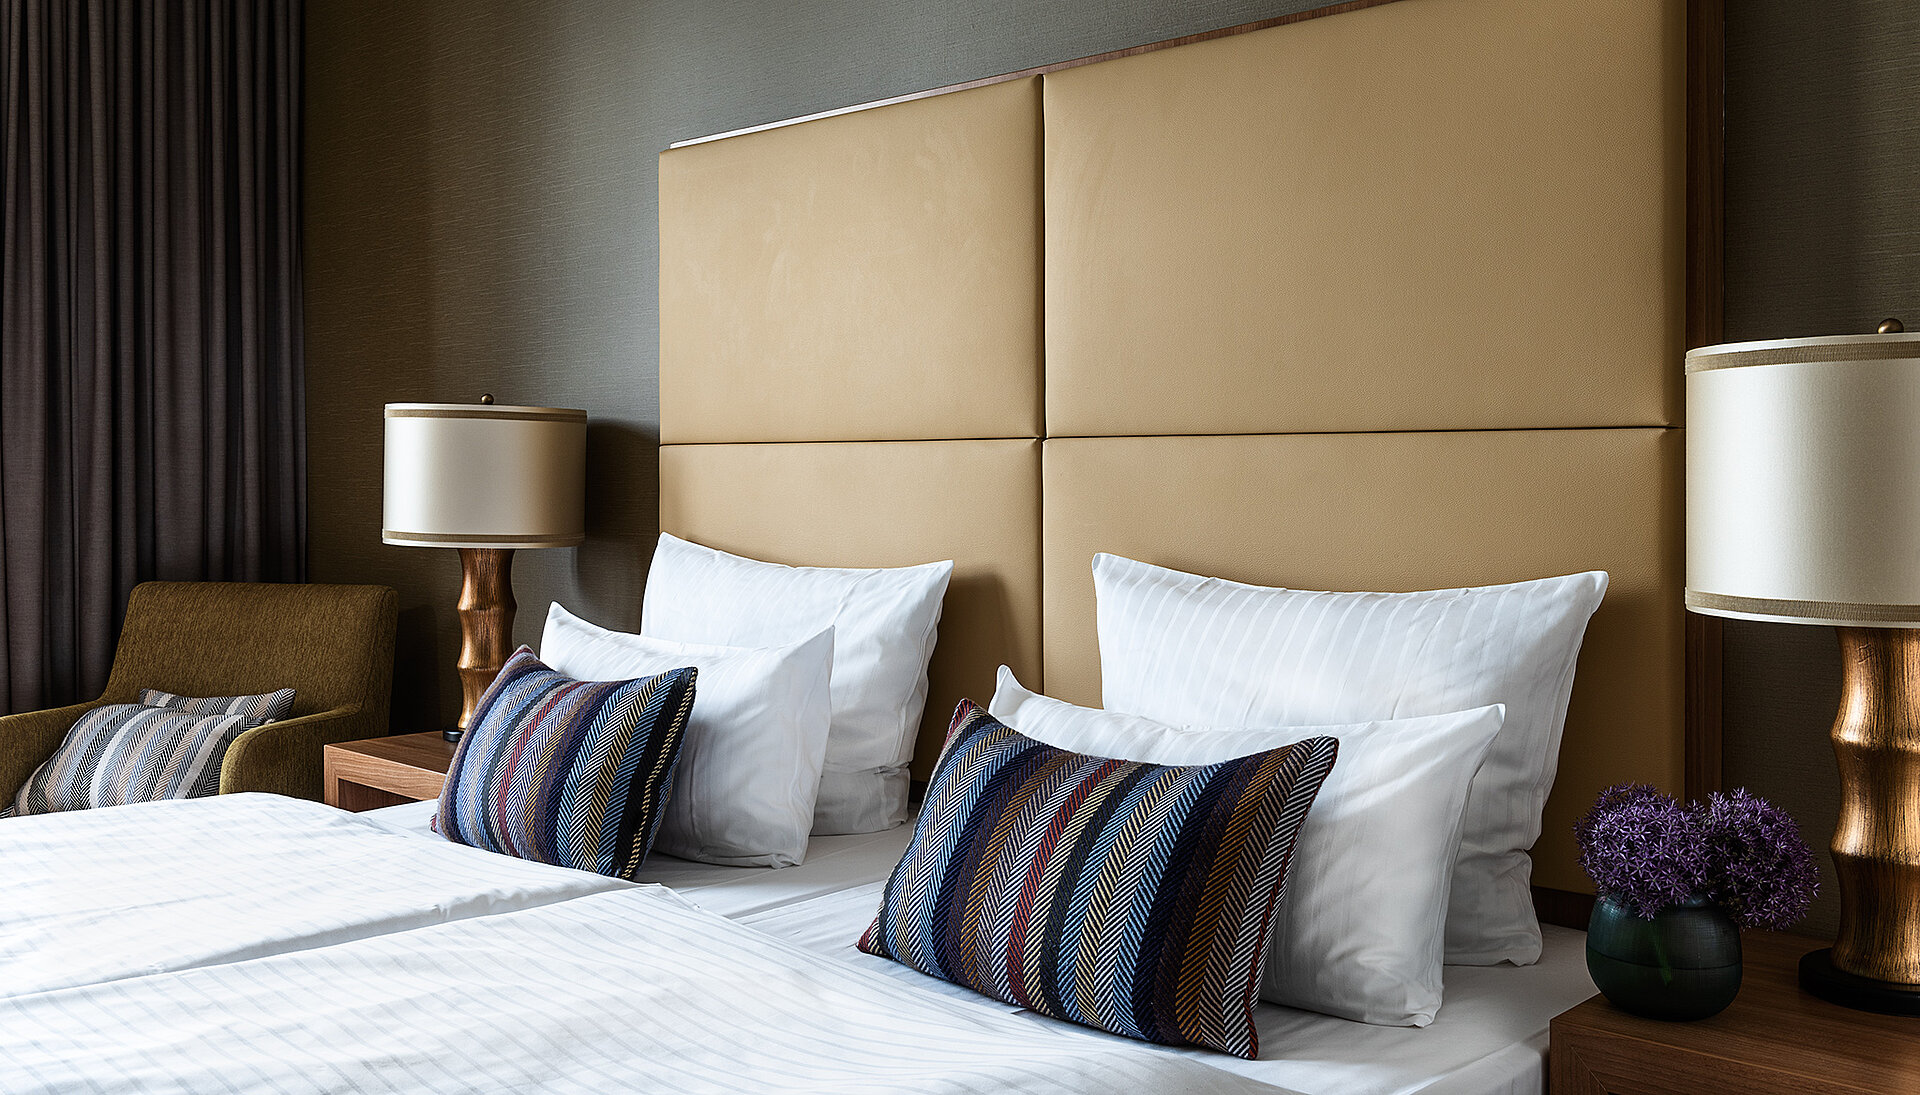 AMERON Köln Hotel Regent Comfort Zimmer Bettseitlich mit Kissendunkel